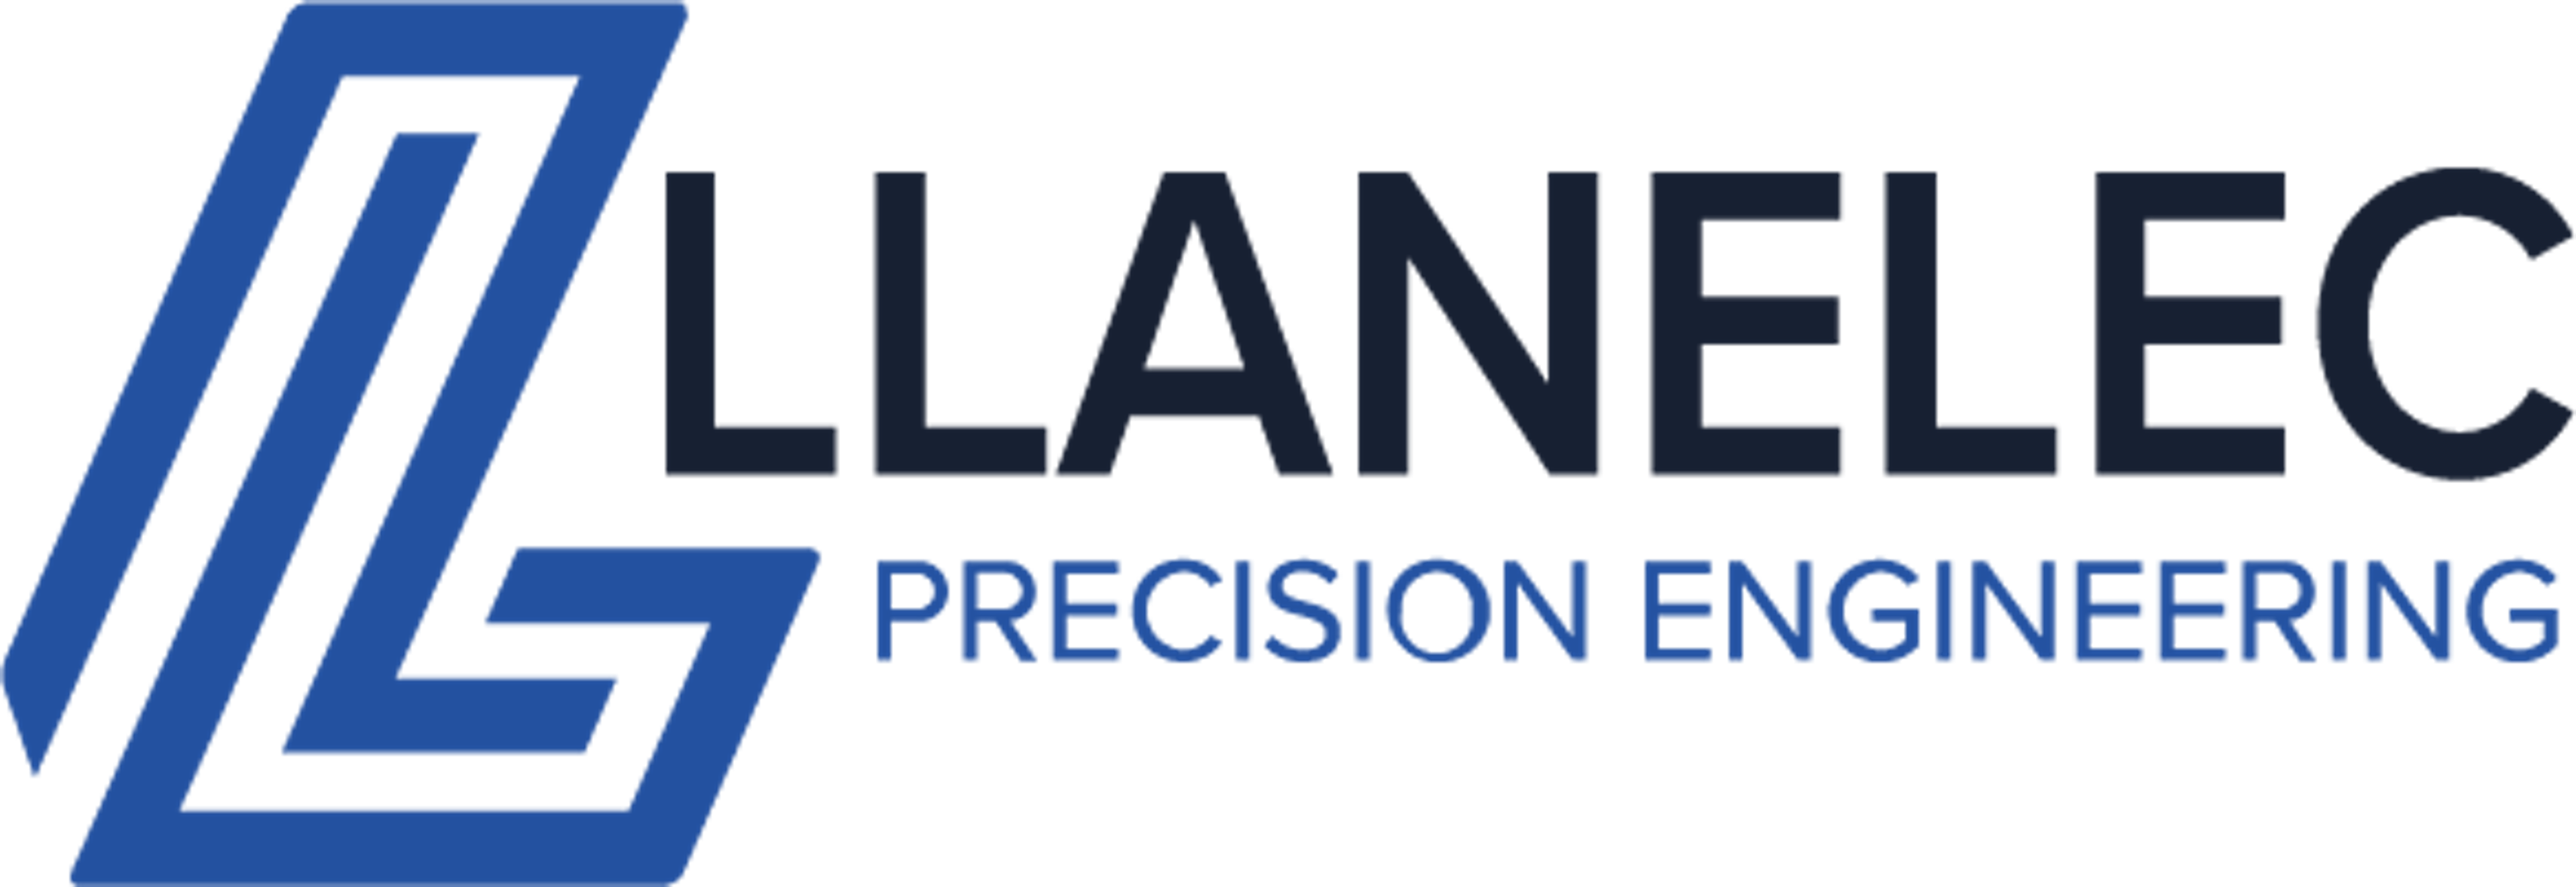 Llanalec Precision Engineering